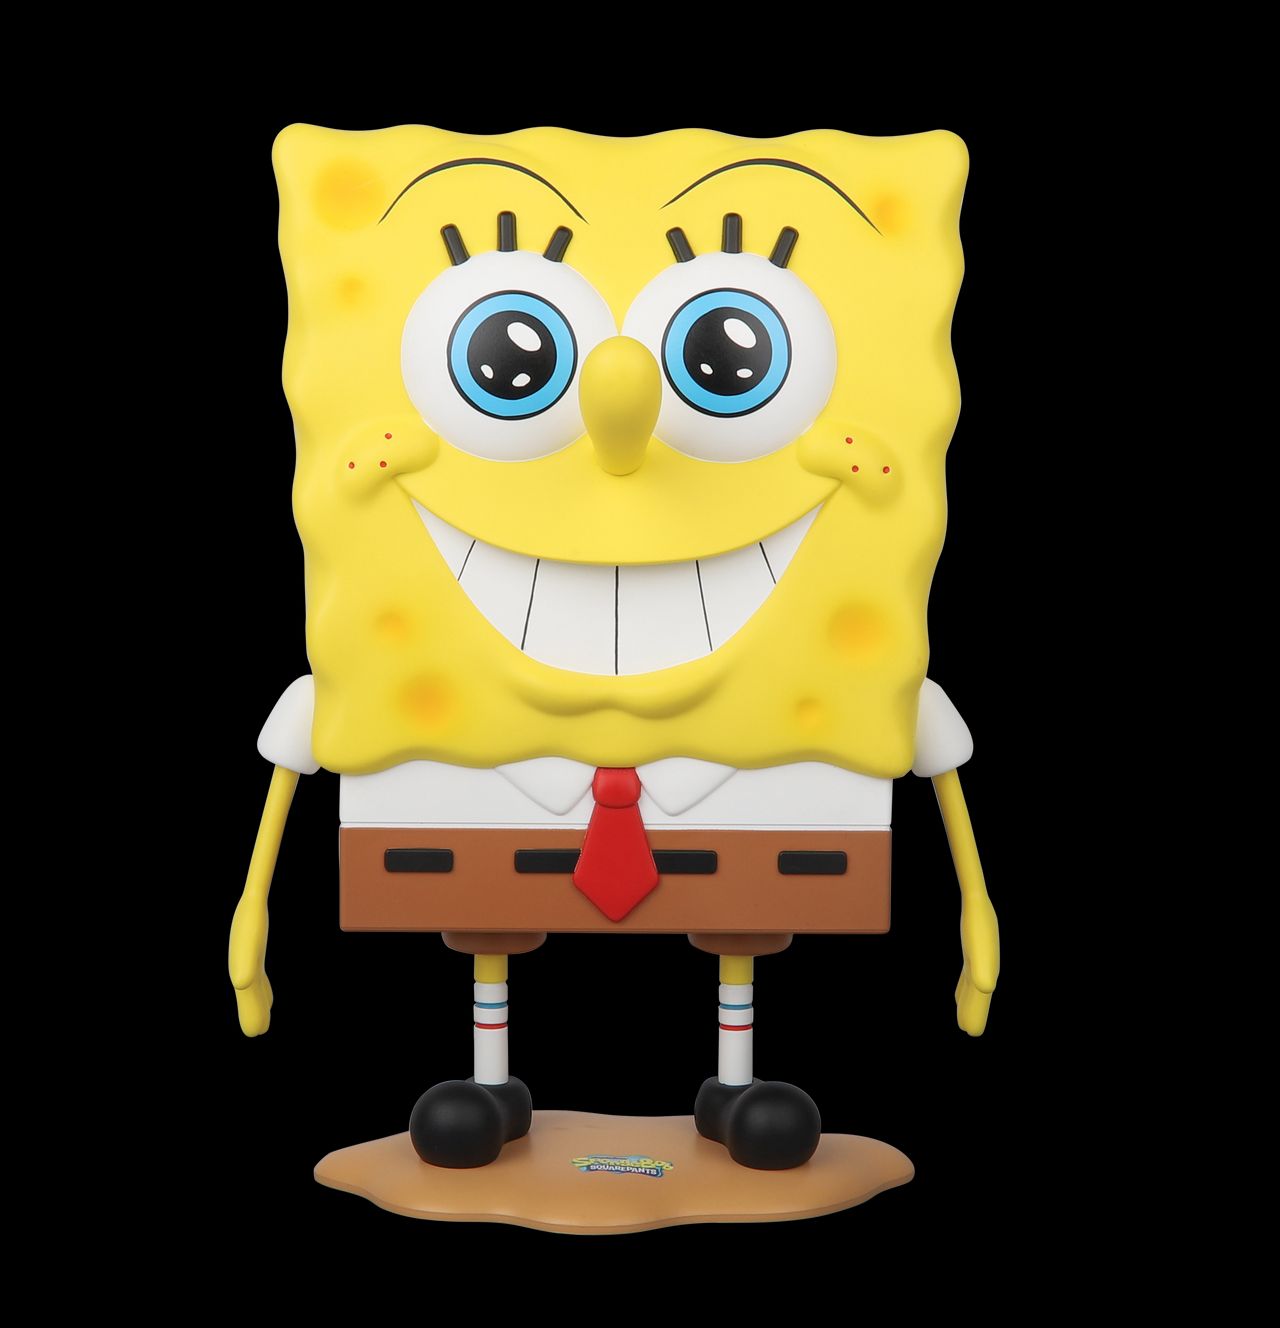 SpongeBob Squarepants pleasantly surprised